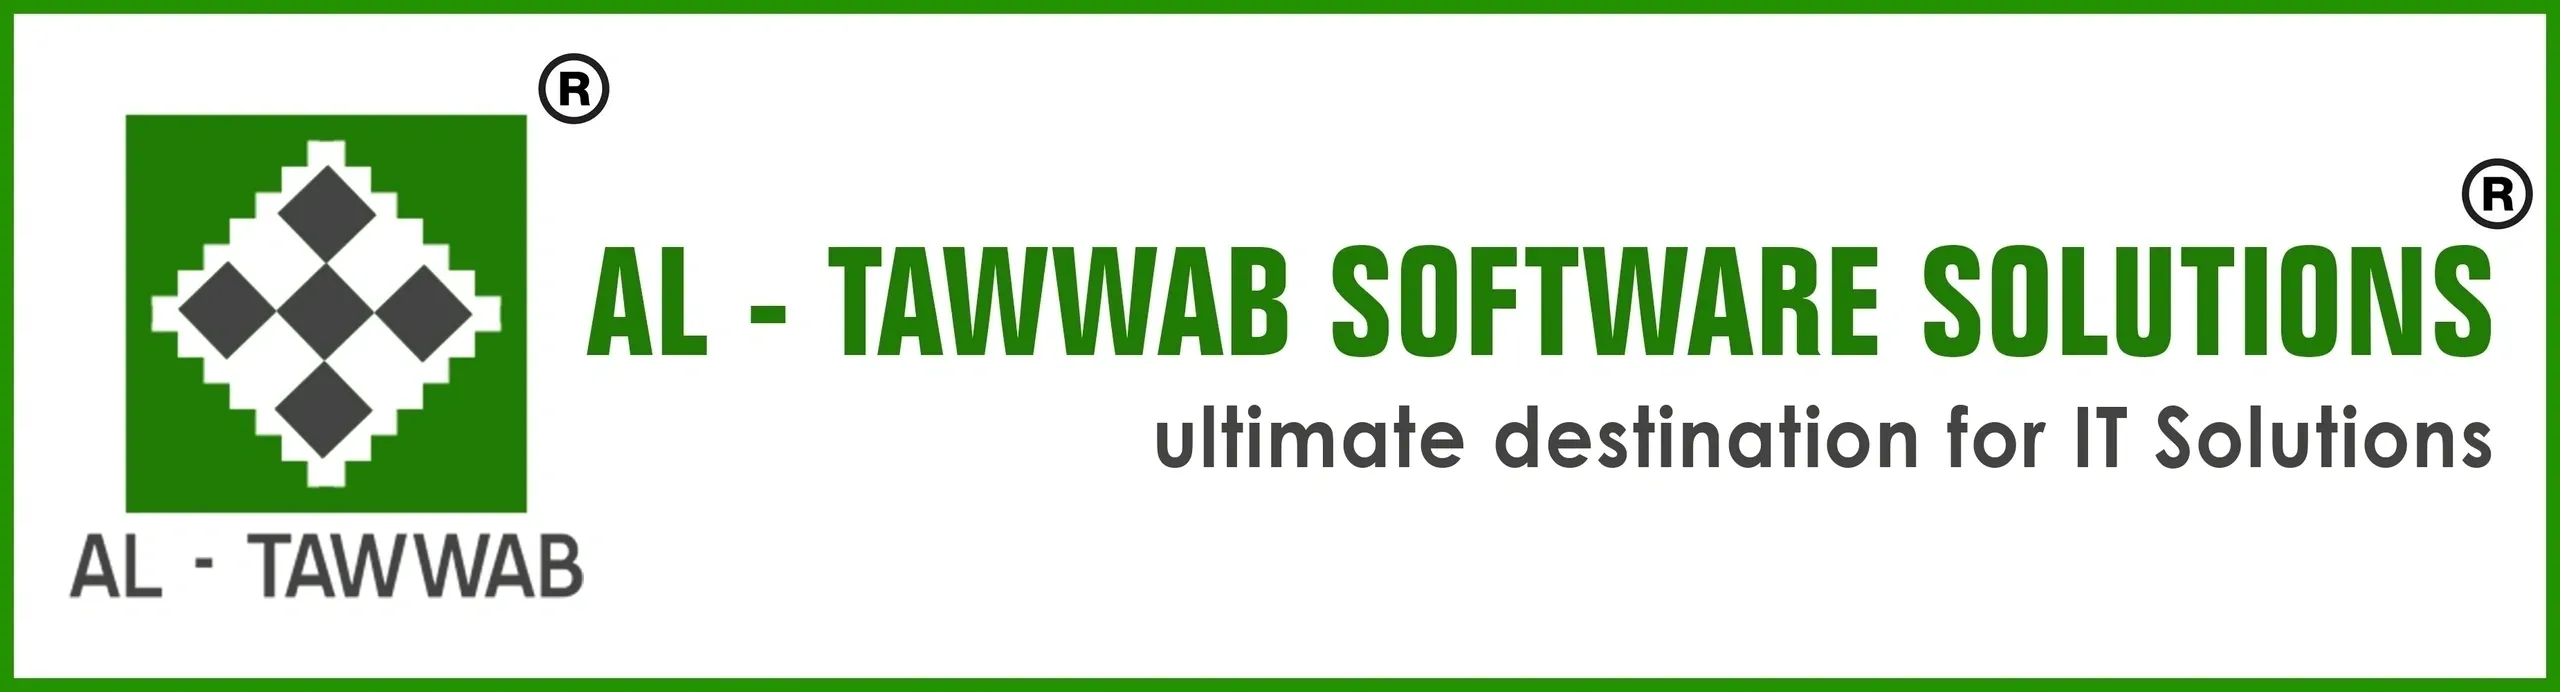 Al-Tawwab Software Solutions